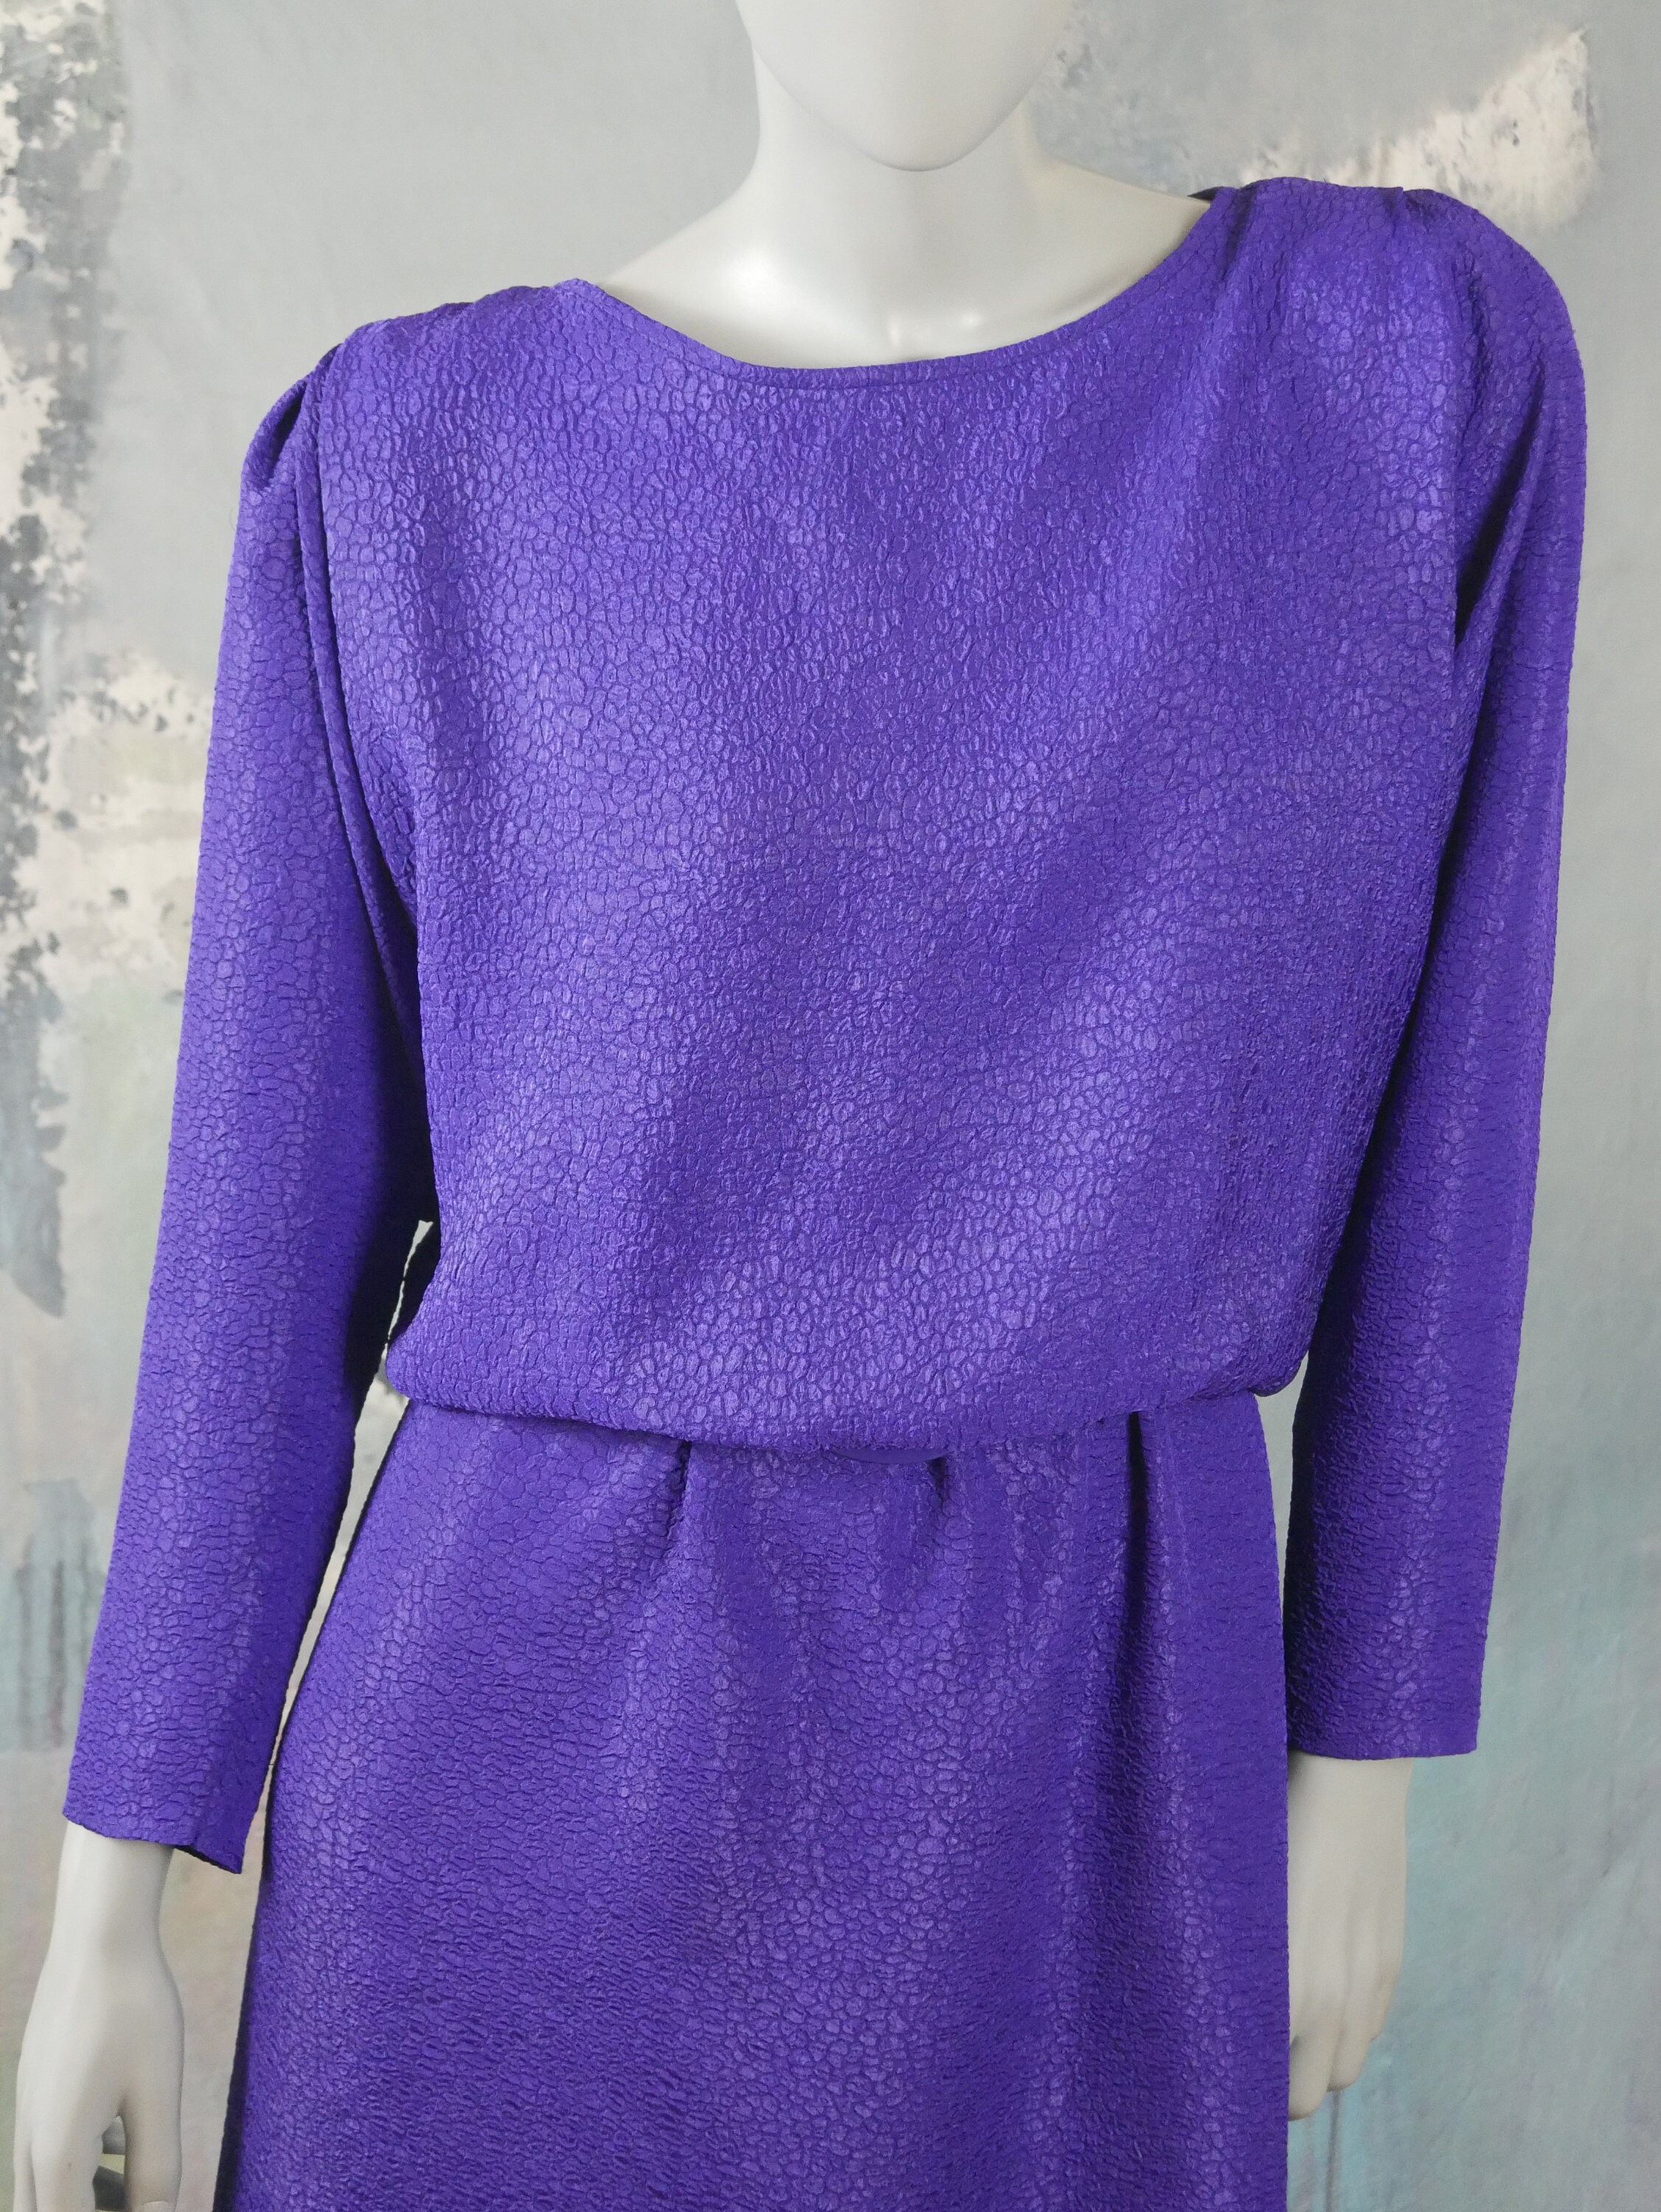 1980s Purple Dress European Vintage Elegant Belted Midi - Etsy